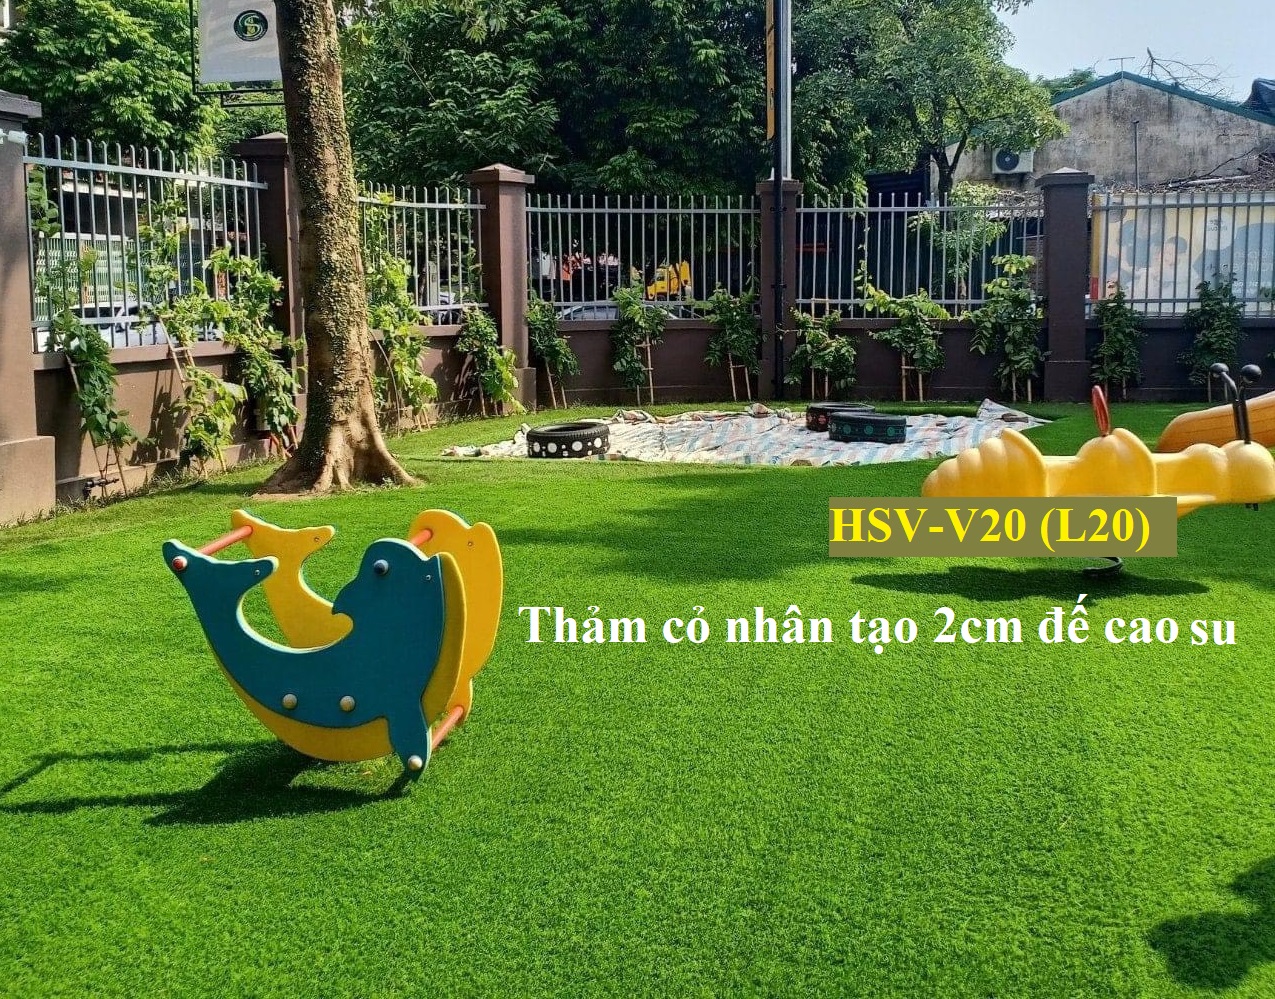 Thảm cỏ nhân tạo 2cm đế cao su - Cửa hàng thảm cỏ nhân tạo giá rẻ Đà Nẵng